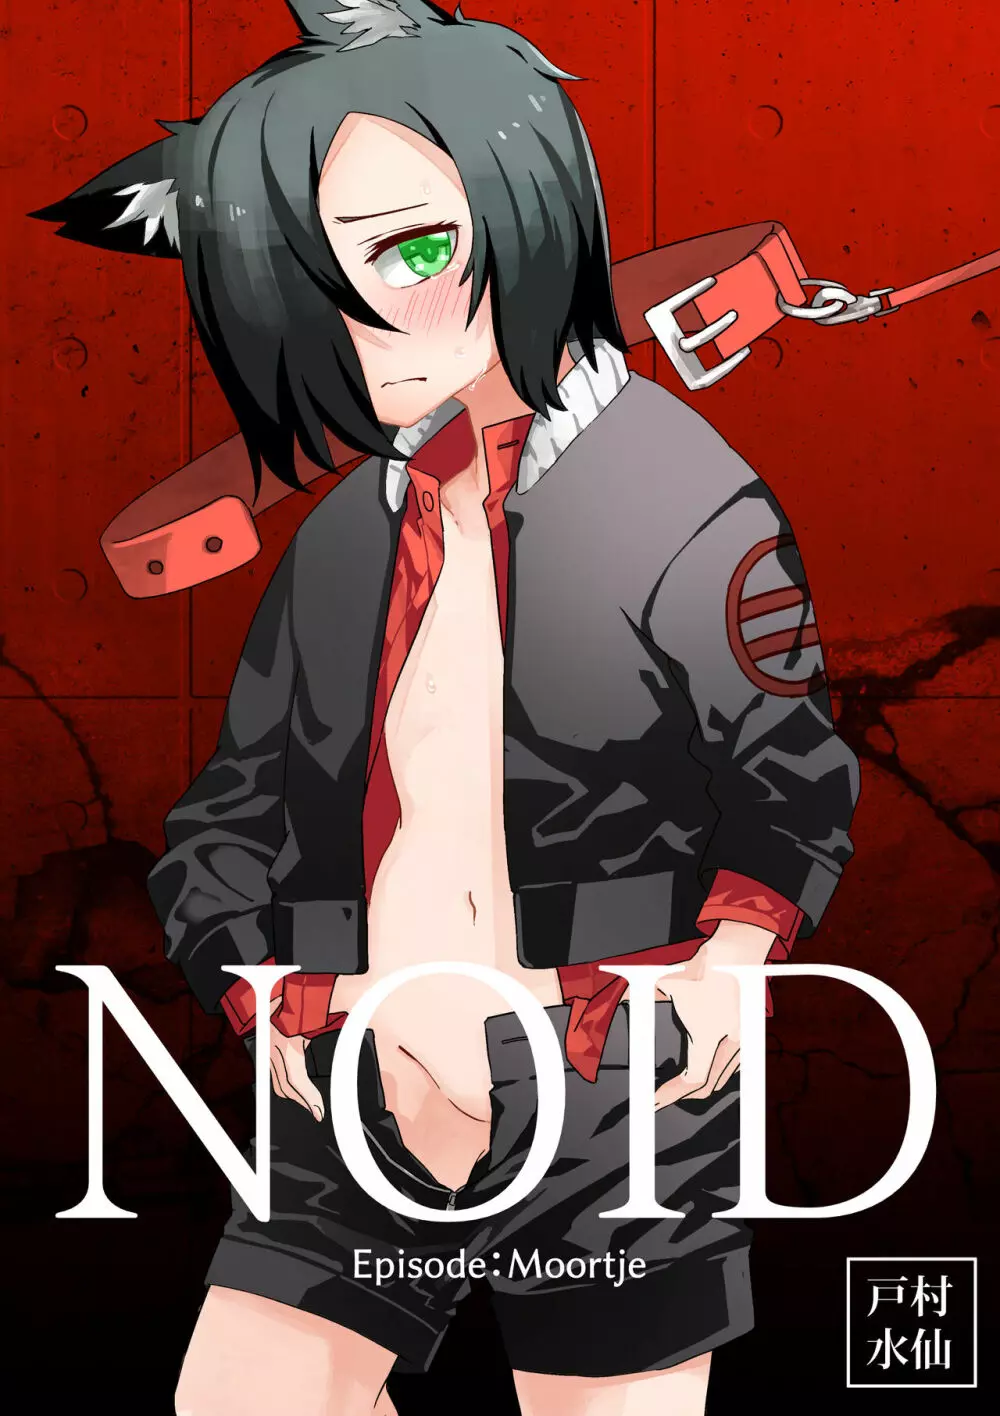 NOID Episode:Moortje